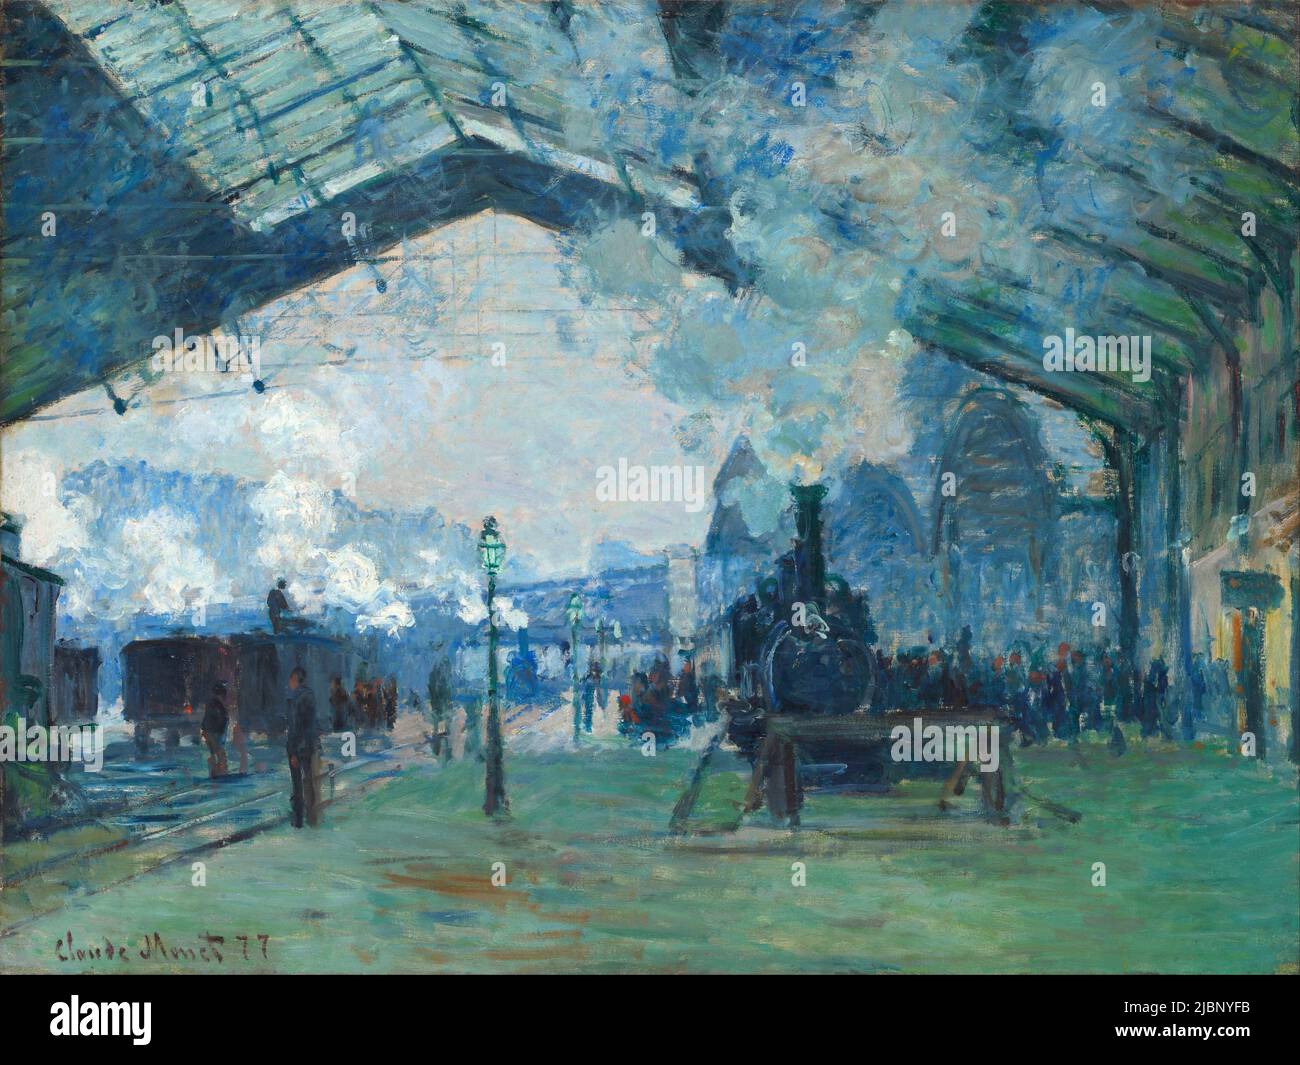 Ankunft des Normandie-Zuges, Gare Saint-Lazare, 1877, Teil der Serie Gare Saint-Lazare von Monet. Gemälde von Claude Monet Stockfoto